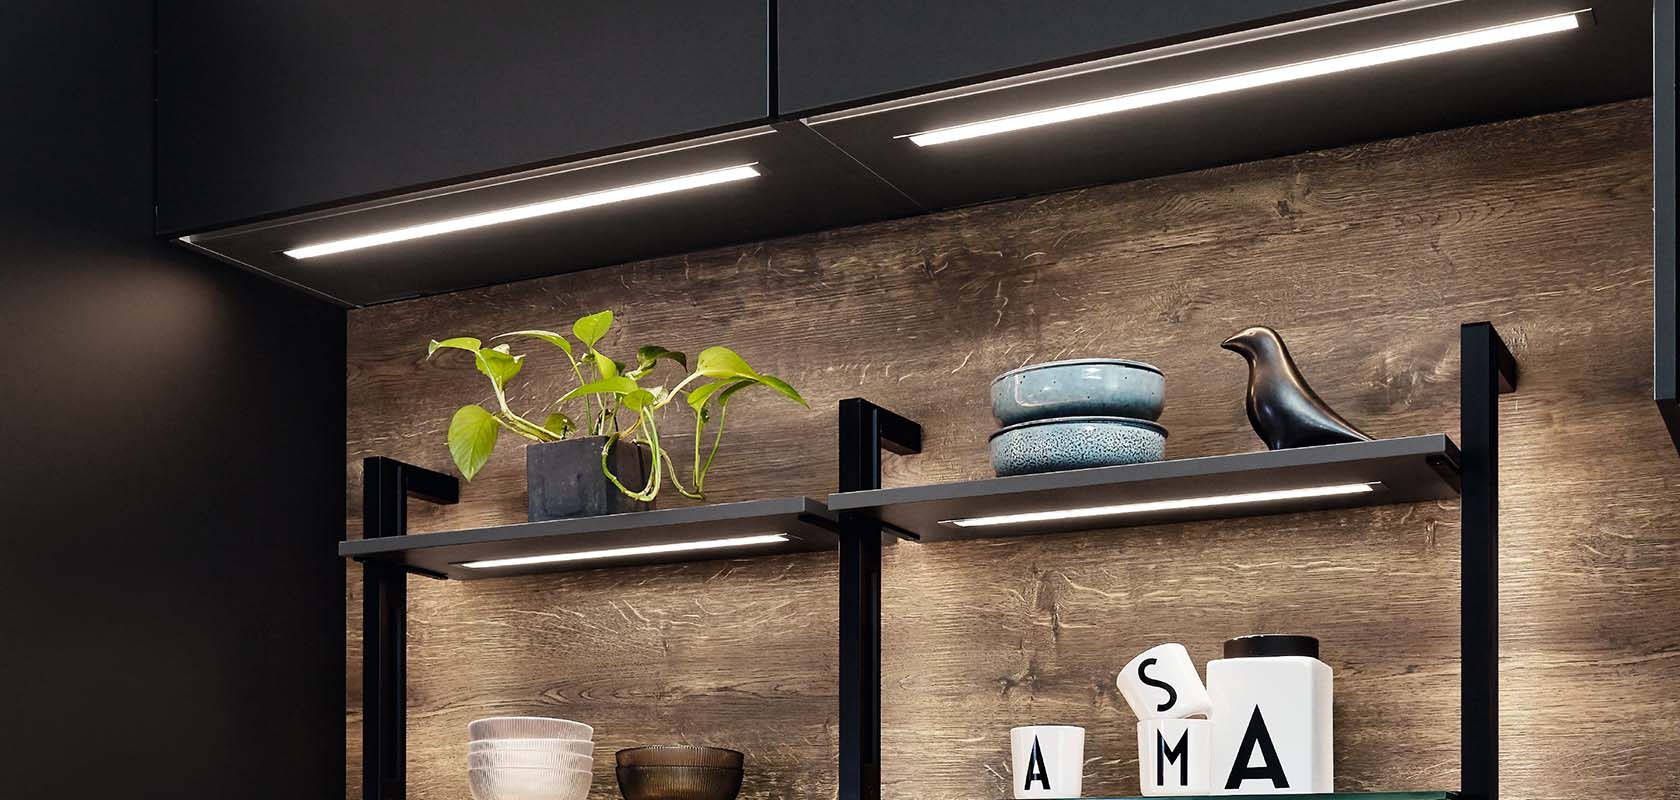 Créez une atmosphère agréable dans votre cuisine grâce aux systèmes d’éclairage nobilia.